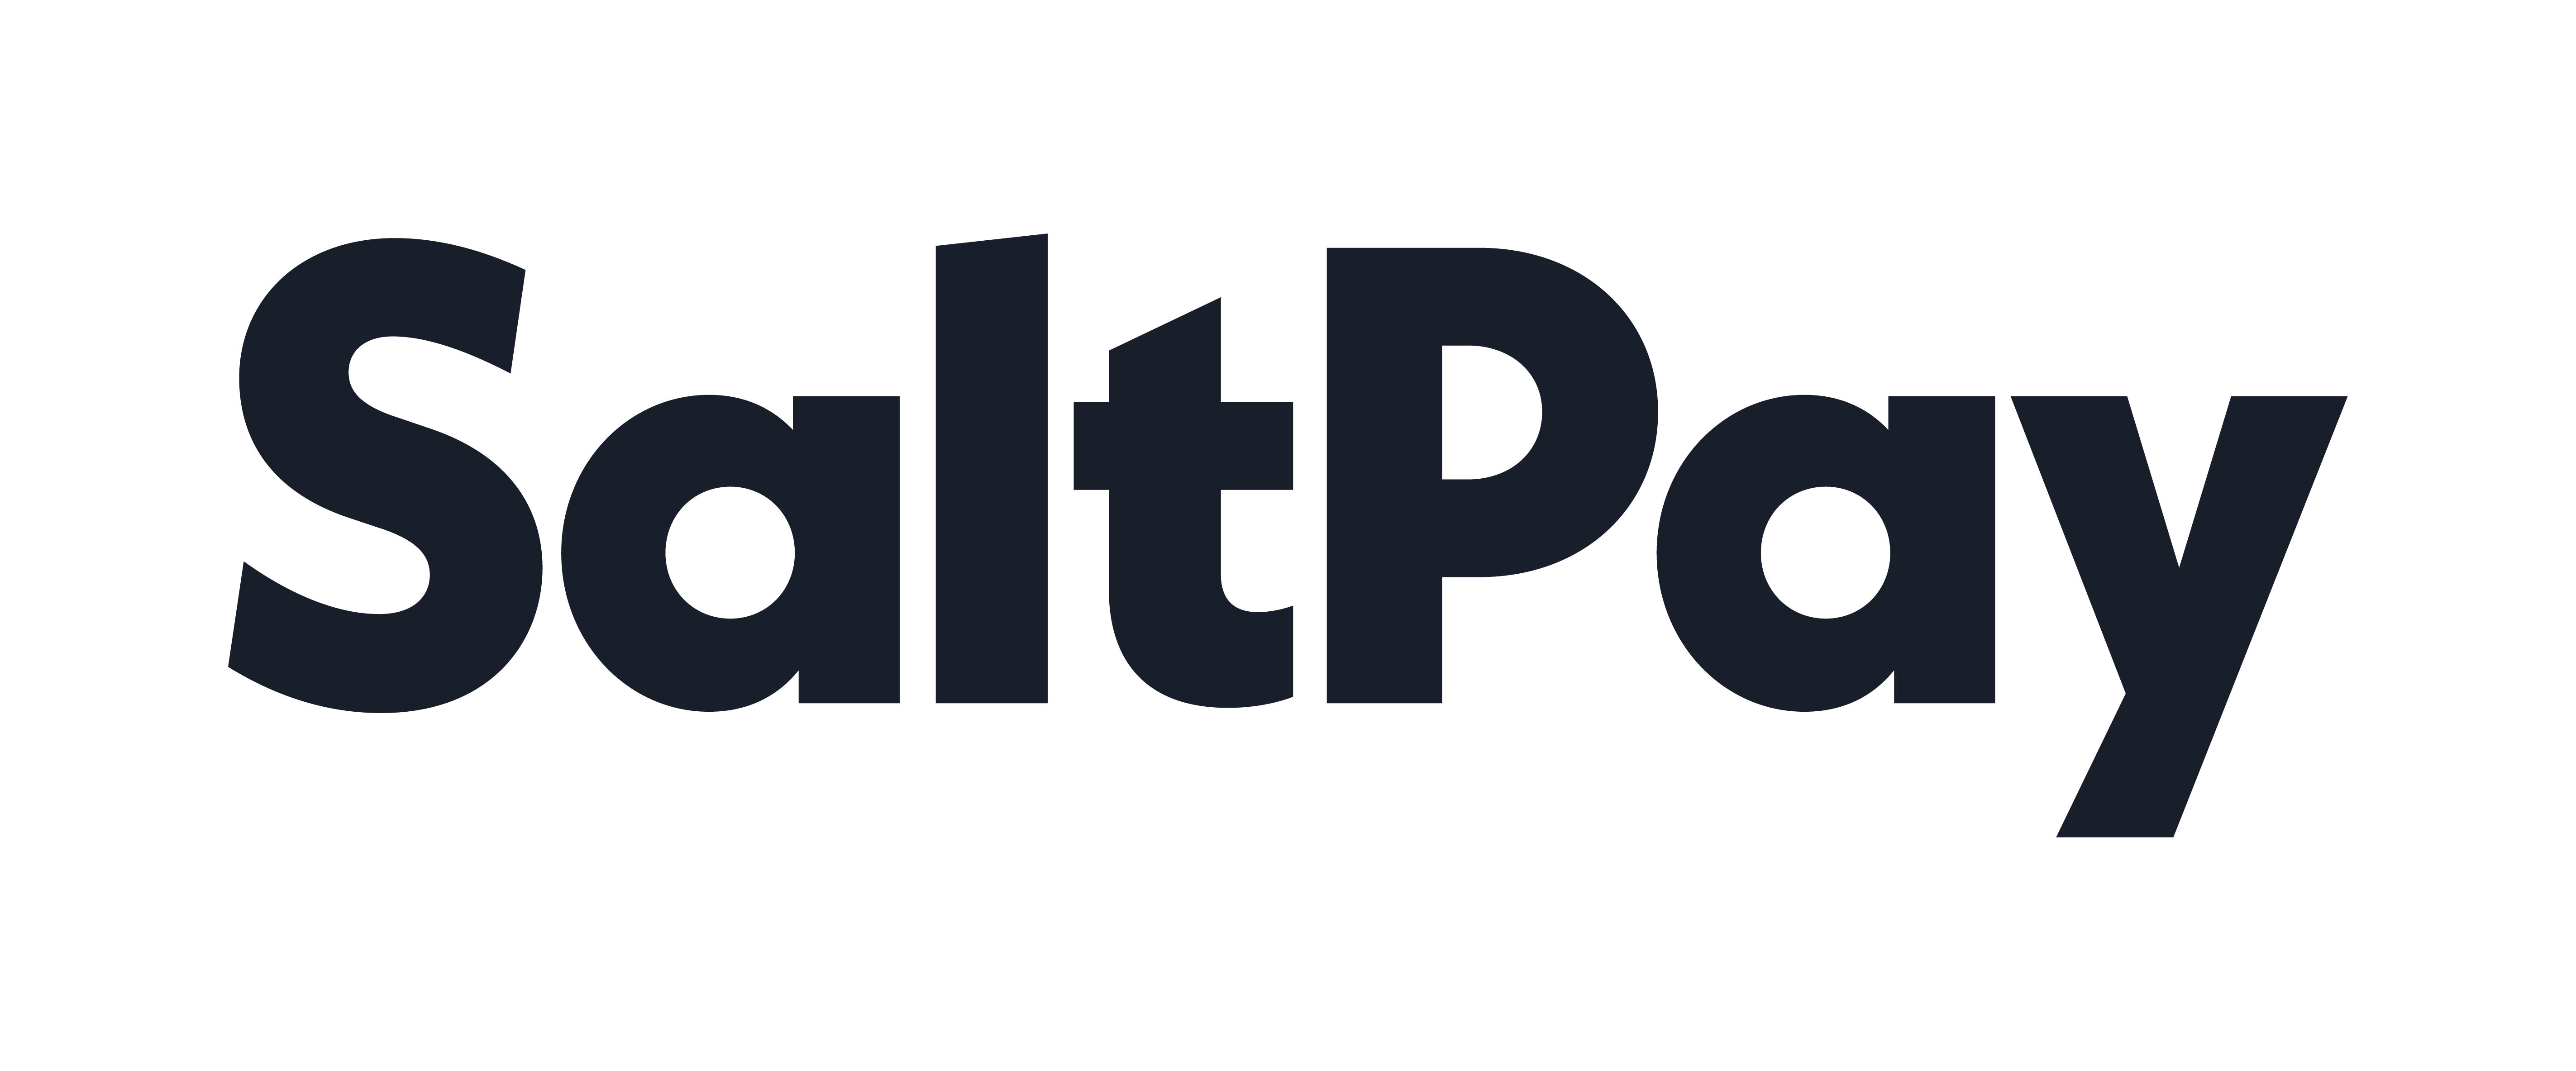 SaltPay hledá kandidáty na pozici Finance Operations Analyst